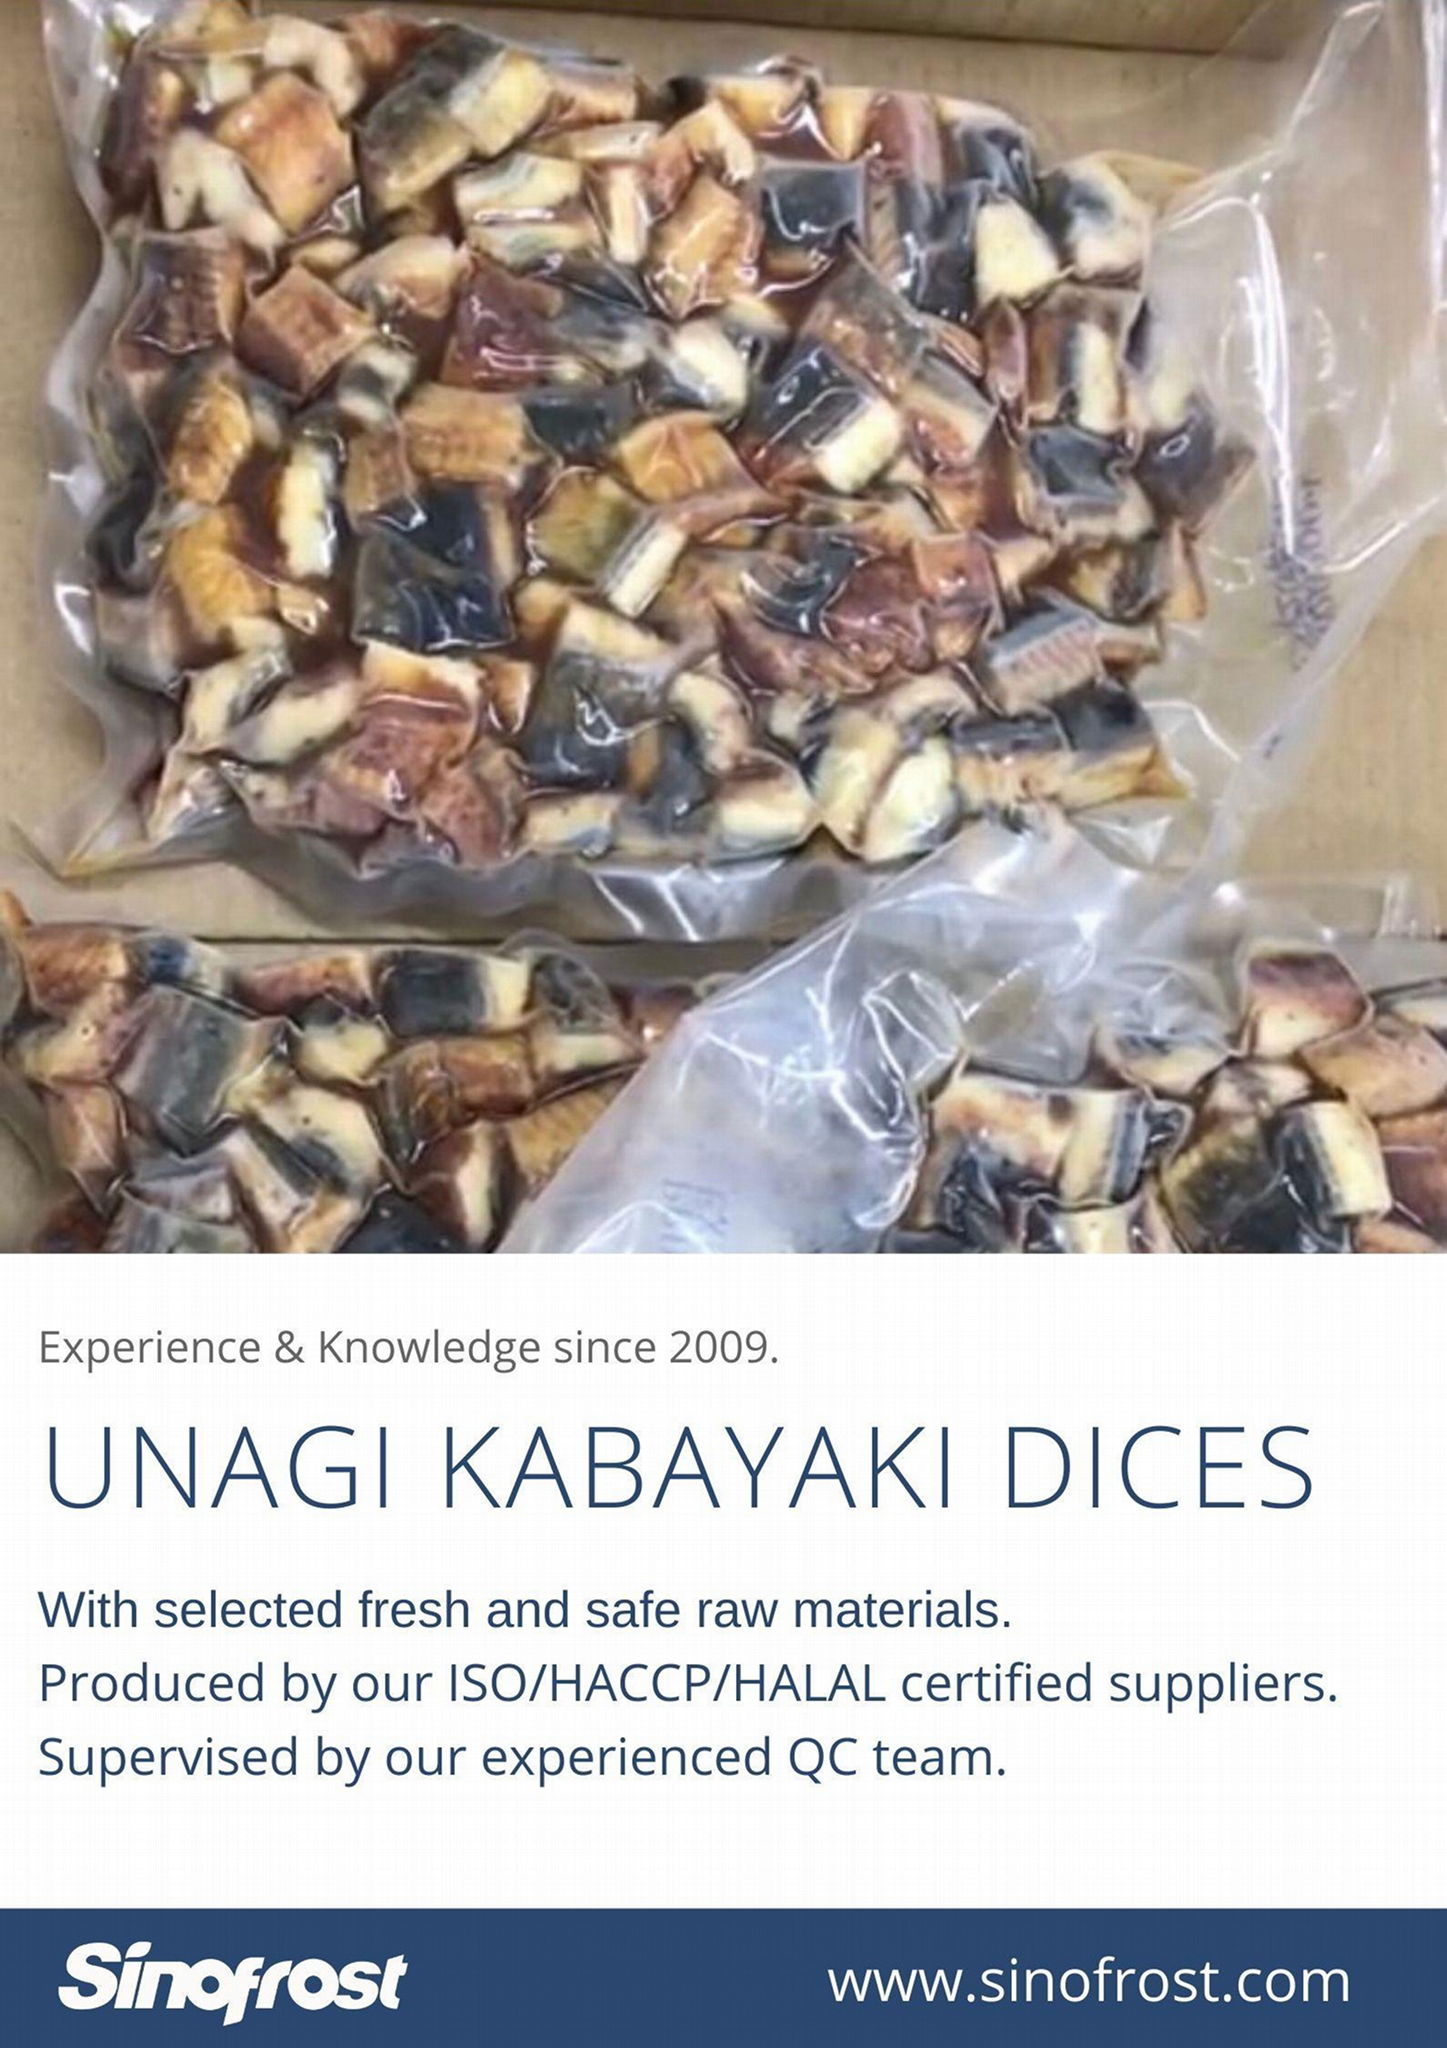 Unagi Dices,Unagi Kabayaki Dices,Frozen Roasted Eel Dices, Broiled Eel Dices 4